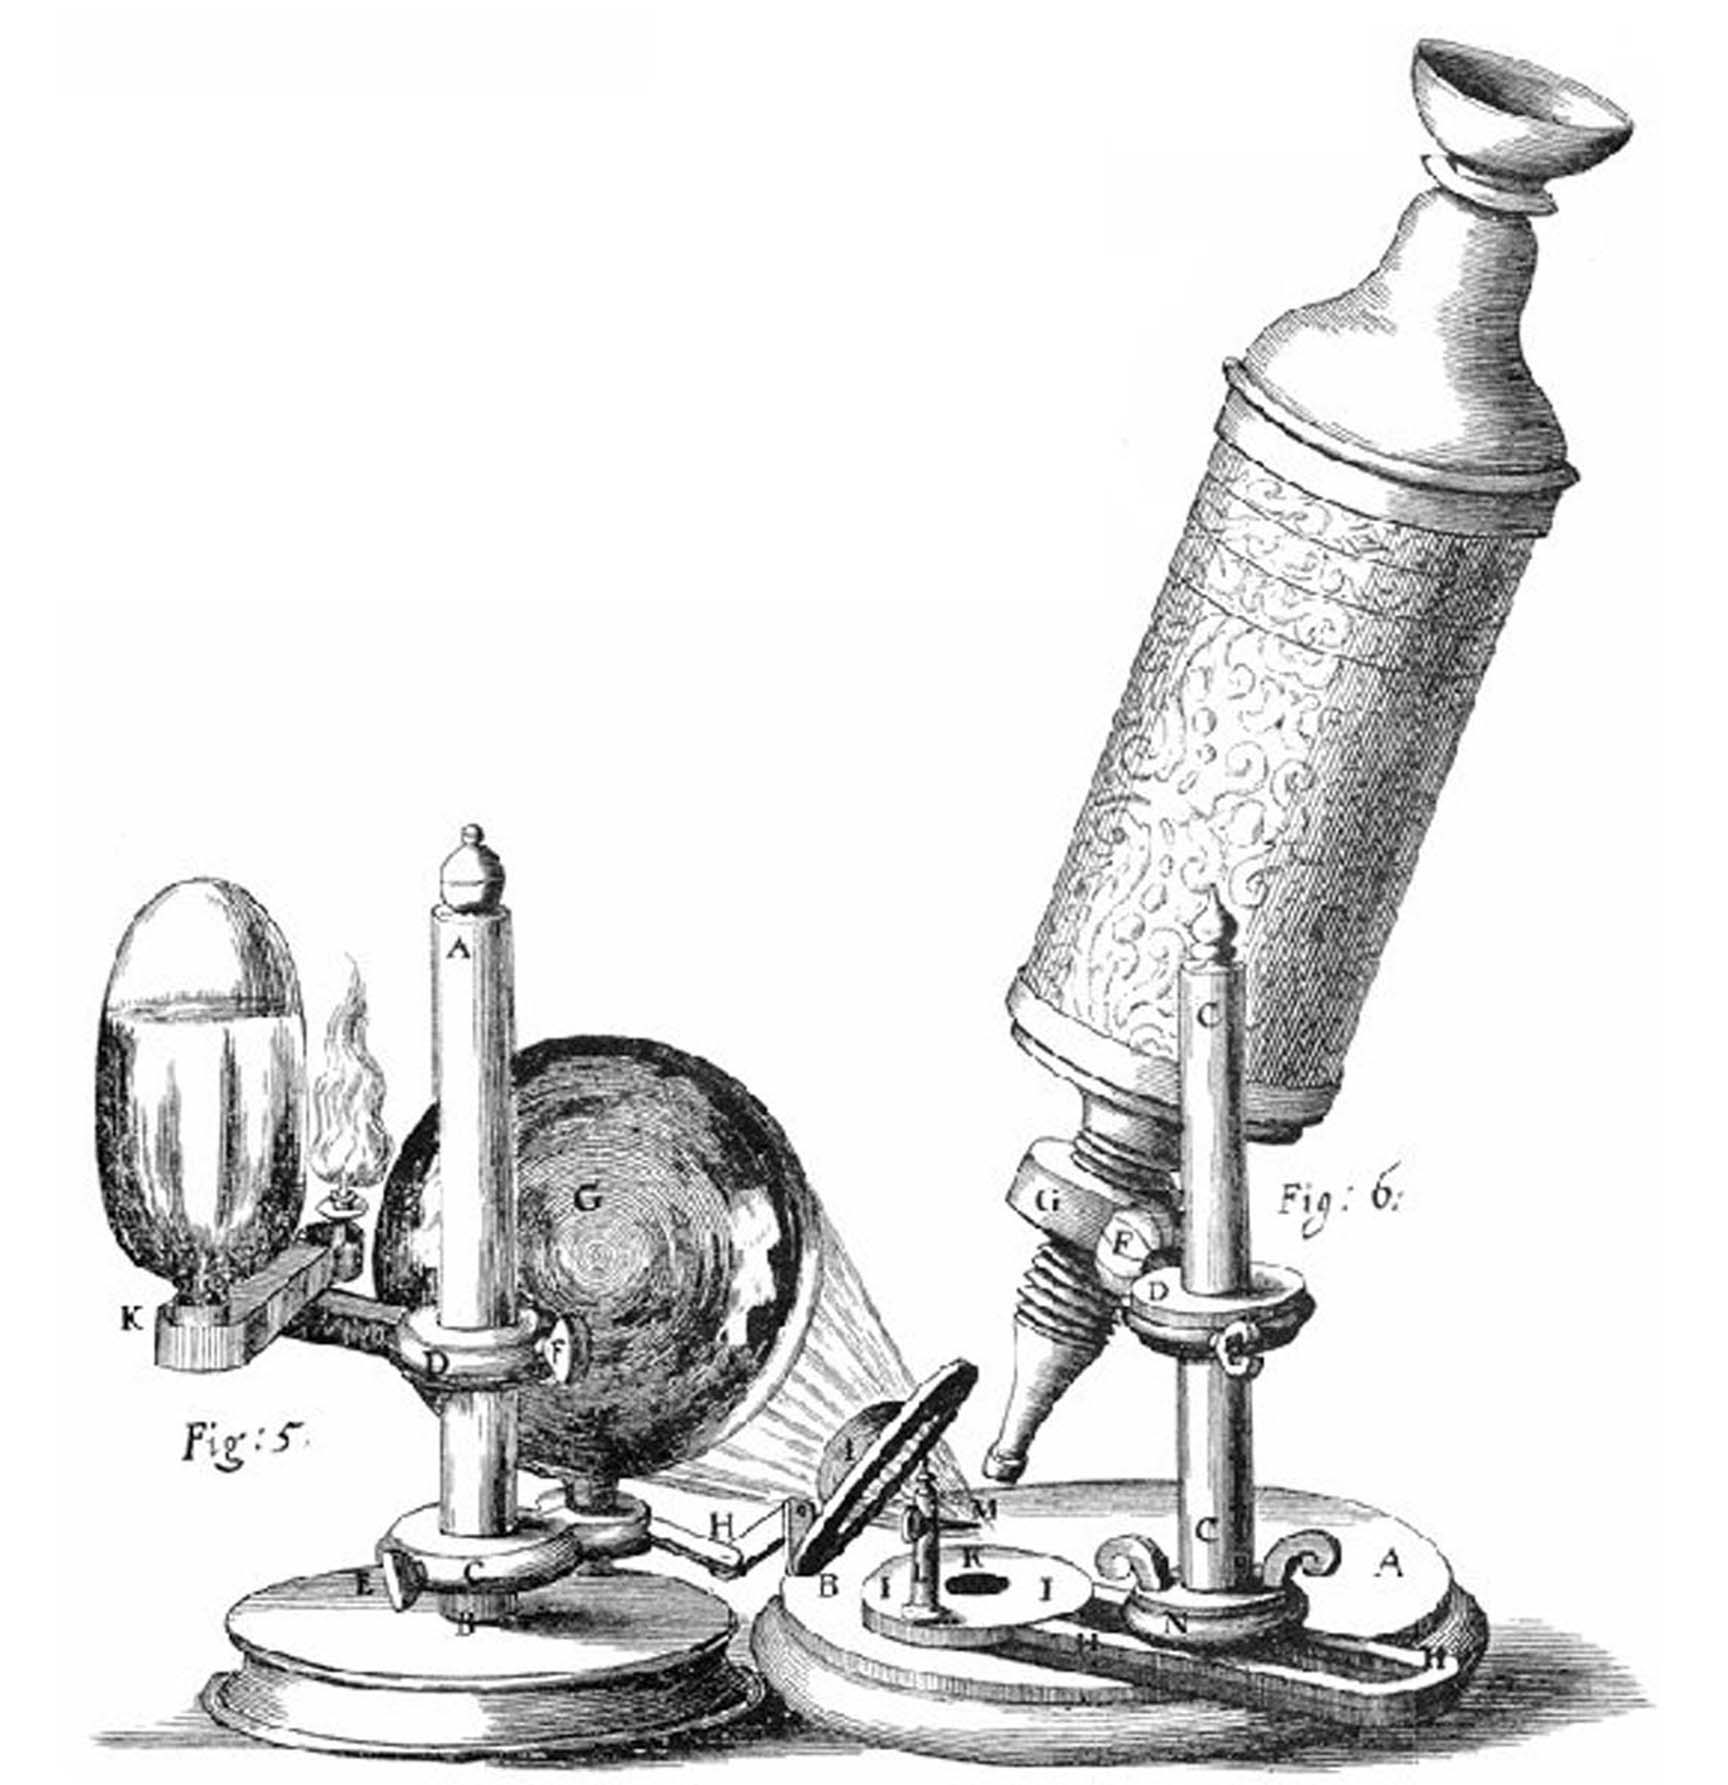 hooke's microscope